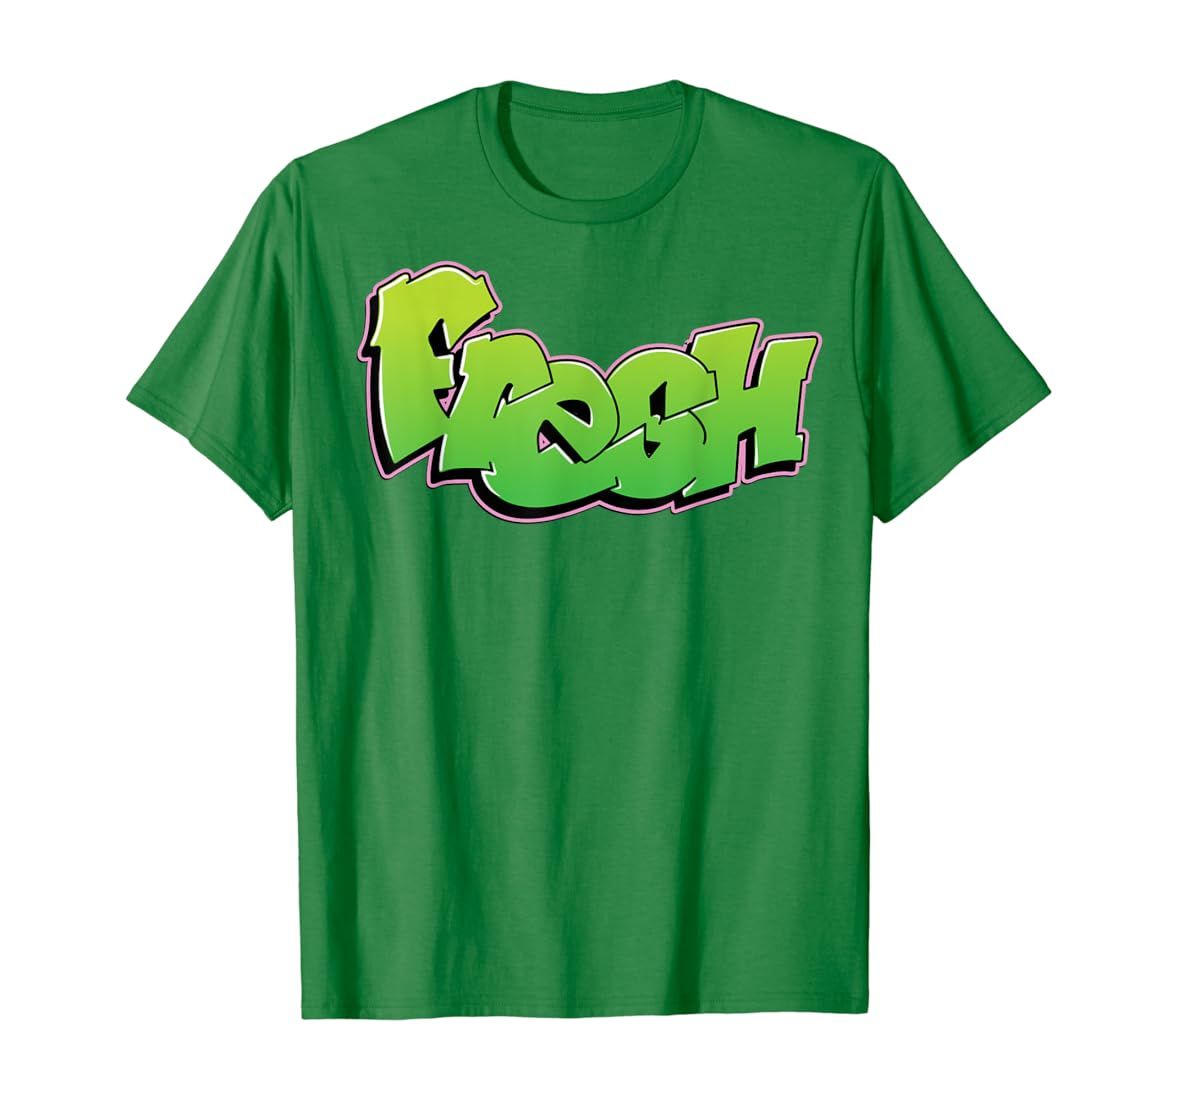 Fresh Graffiti Style Graphic T-Shirt | Amazon (US)